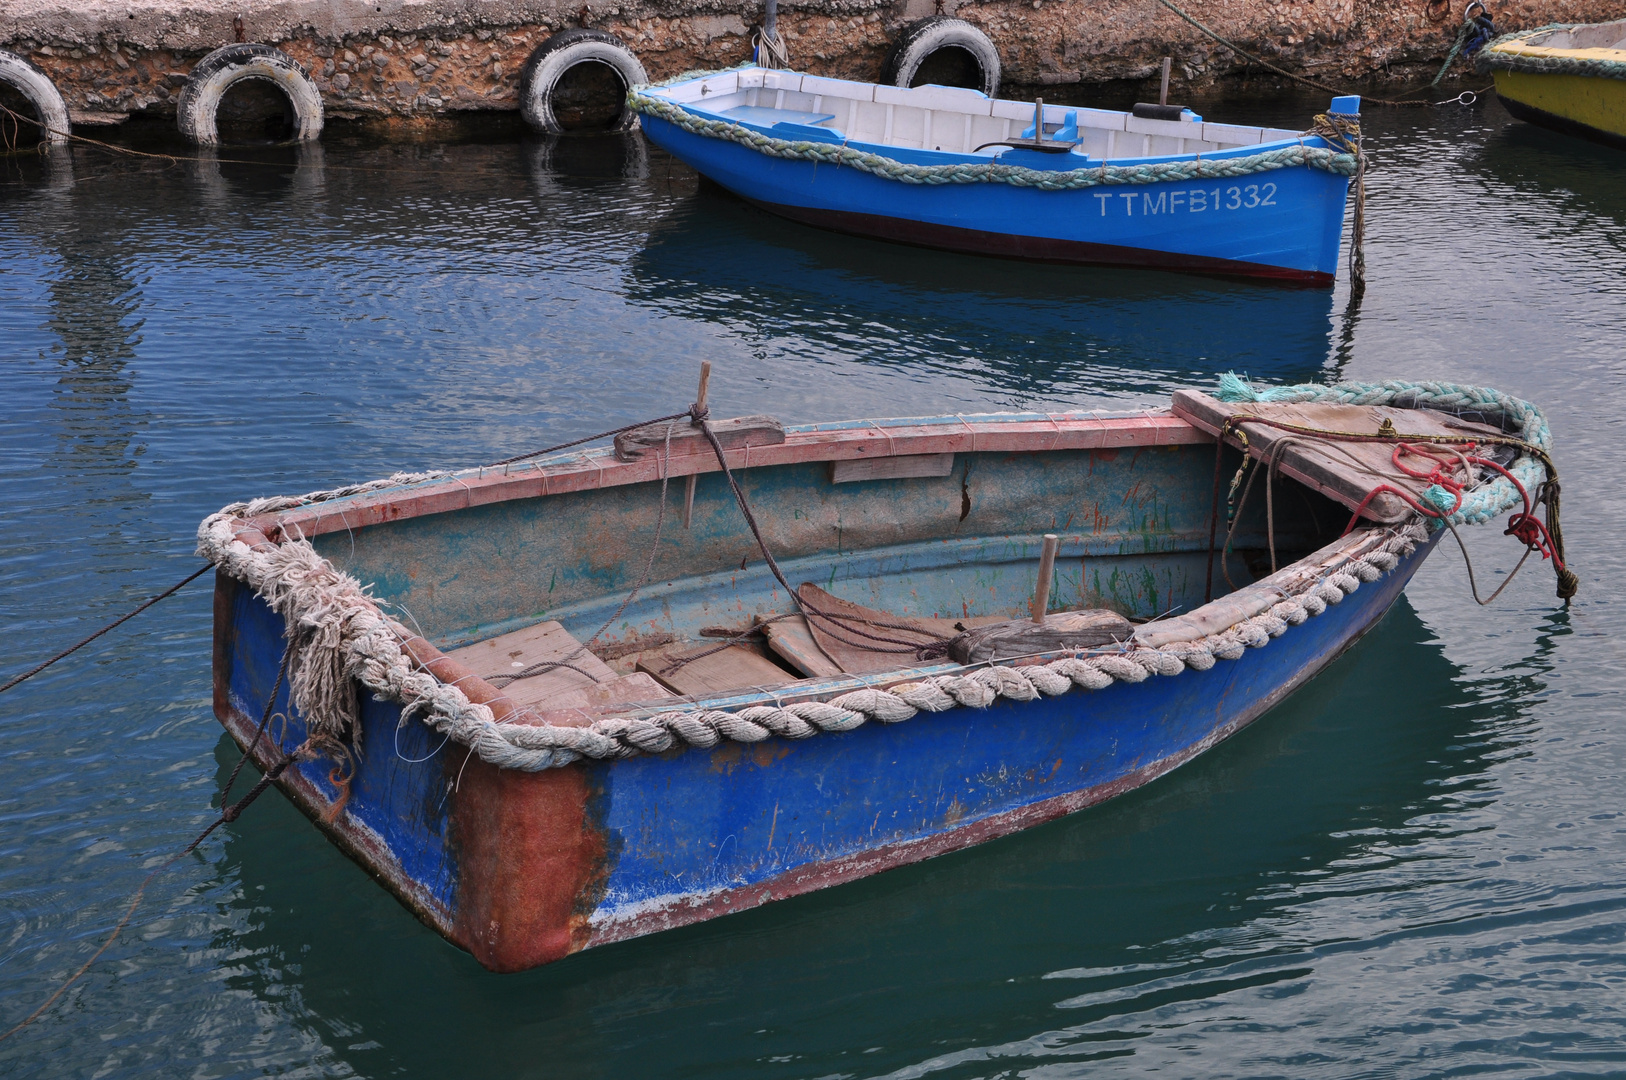 Altes Boot im Hafen von Marsaxlokk